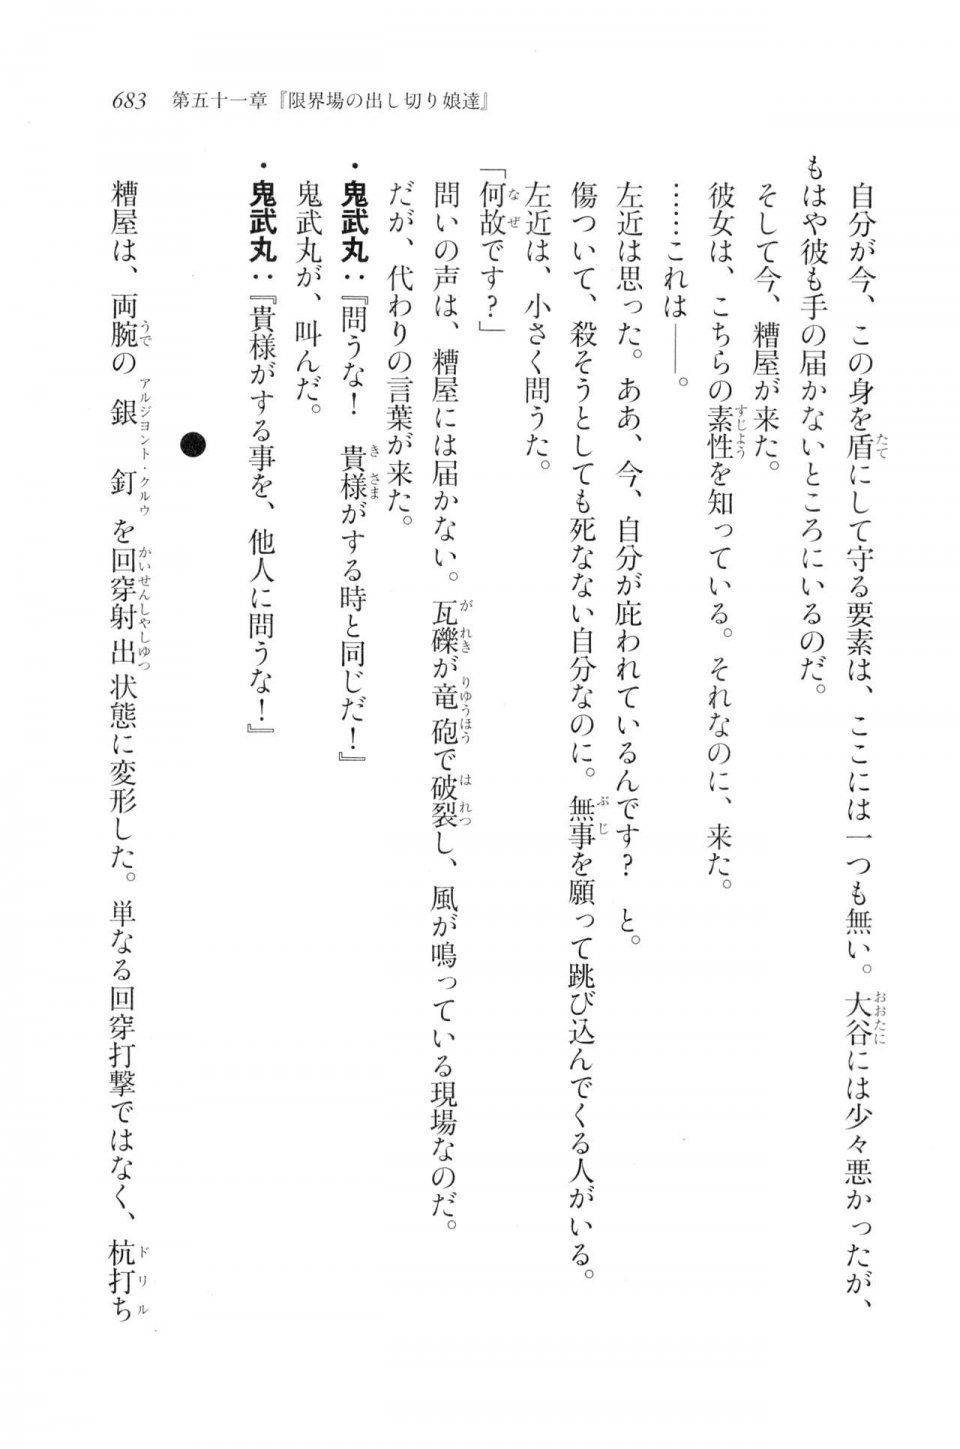 Kyoukai Senjou no Horizon LN Vol 20(8B) - Photo #683